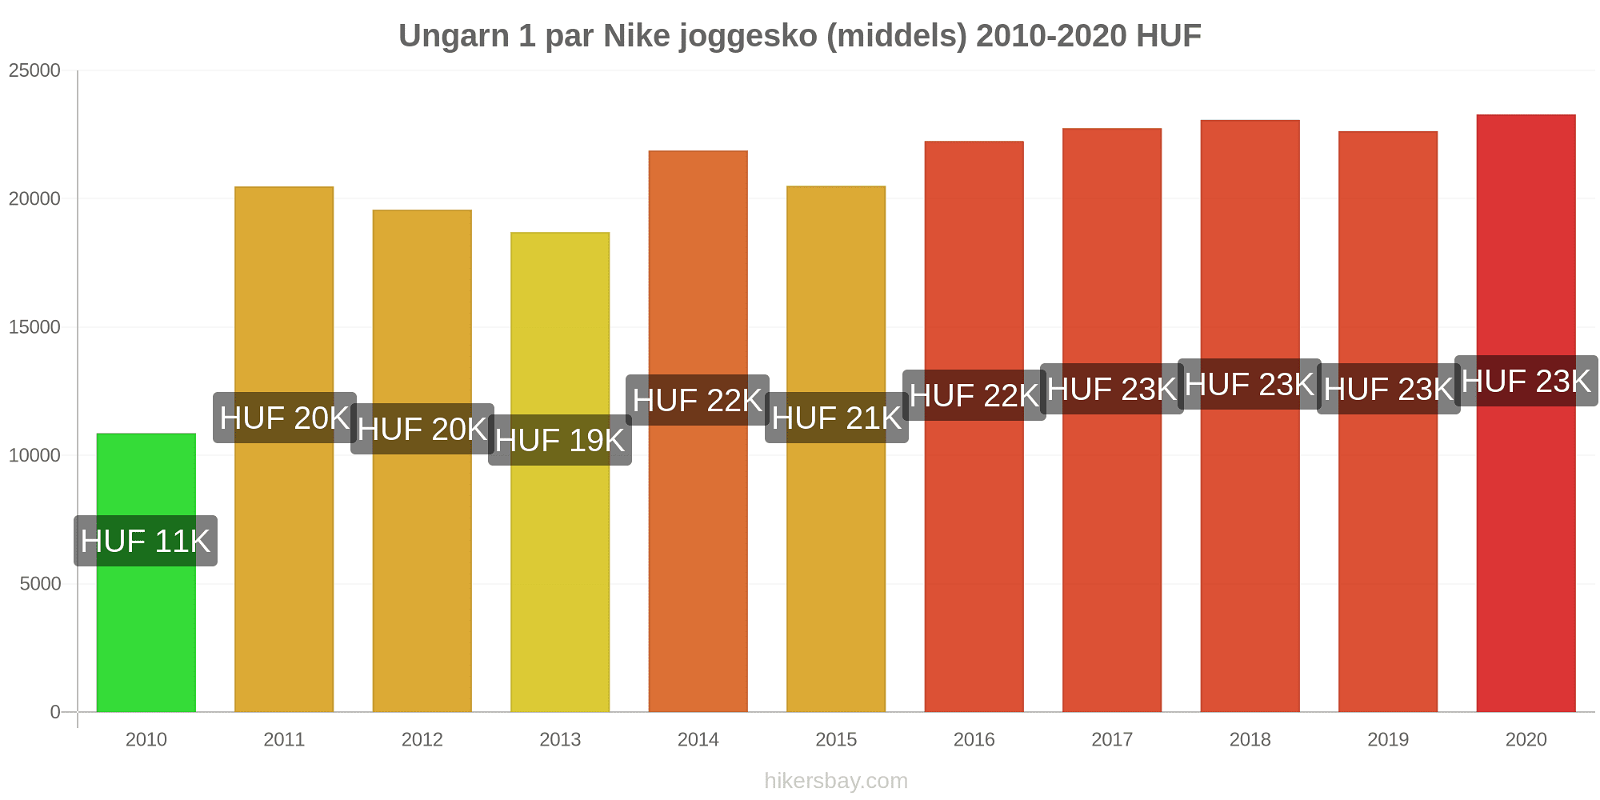 Ungarn prisendringer 1 par Nike joggesko (middels) hikersbay.com